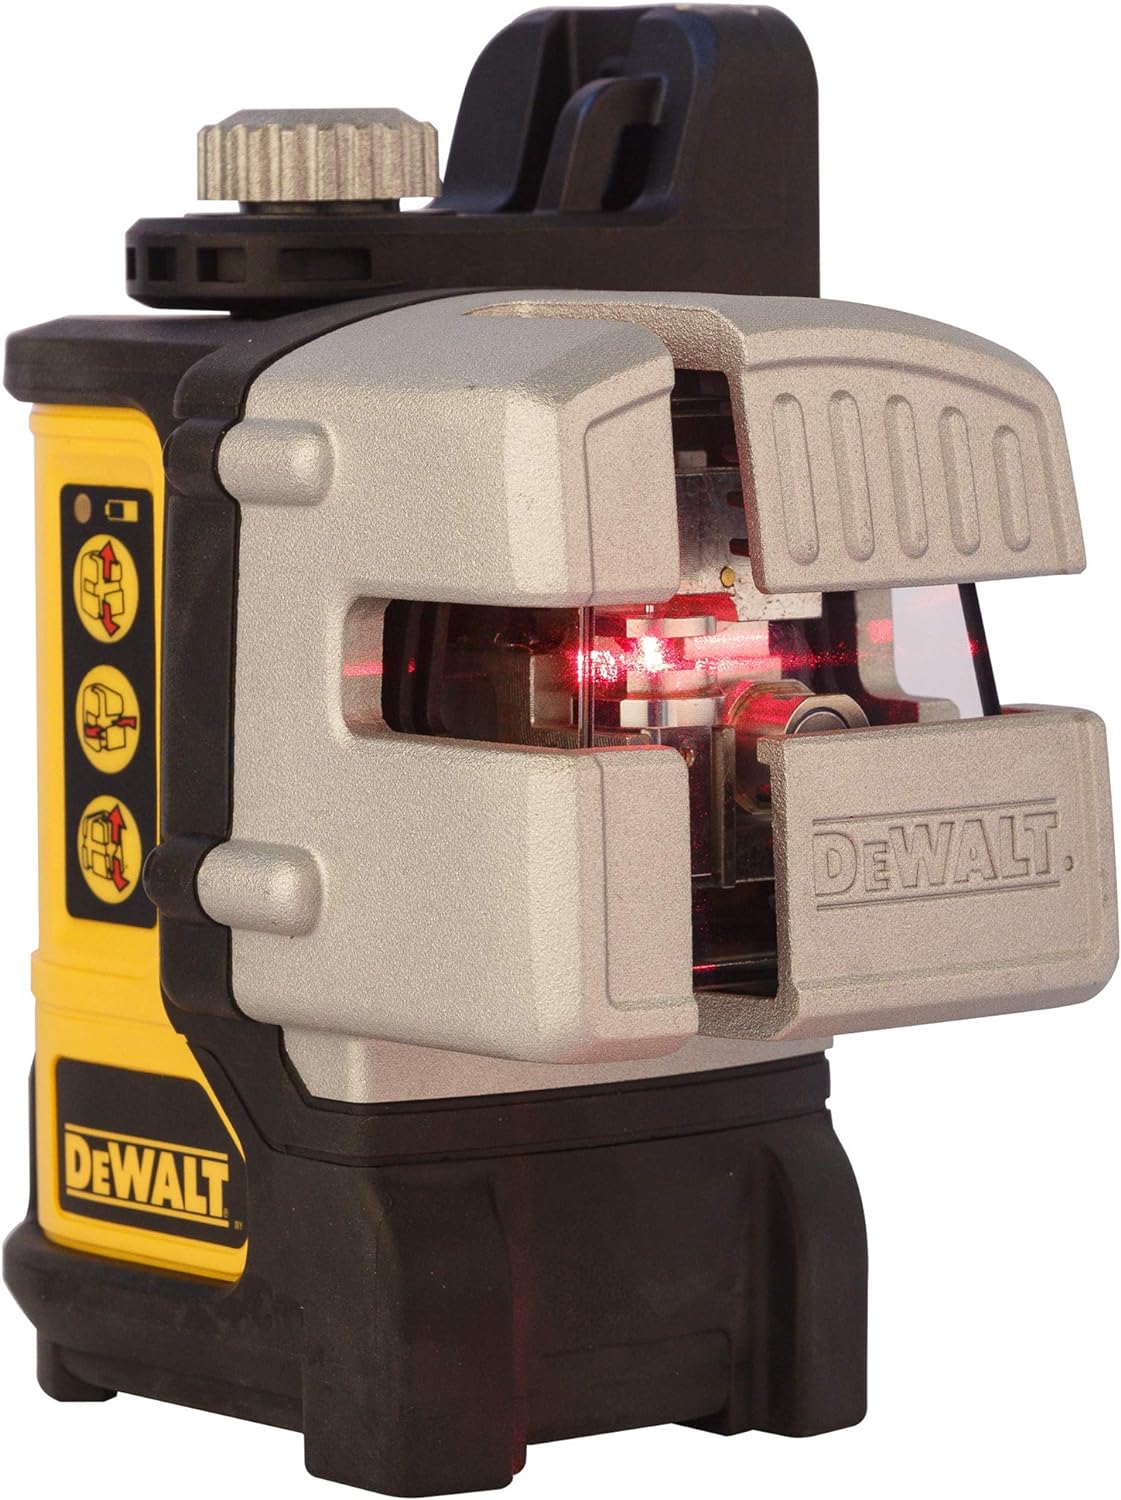 DEWALT DW089K Laser Review UK